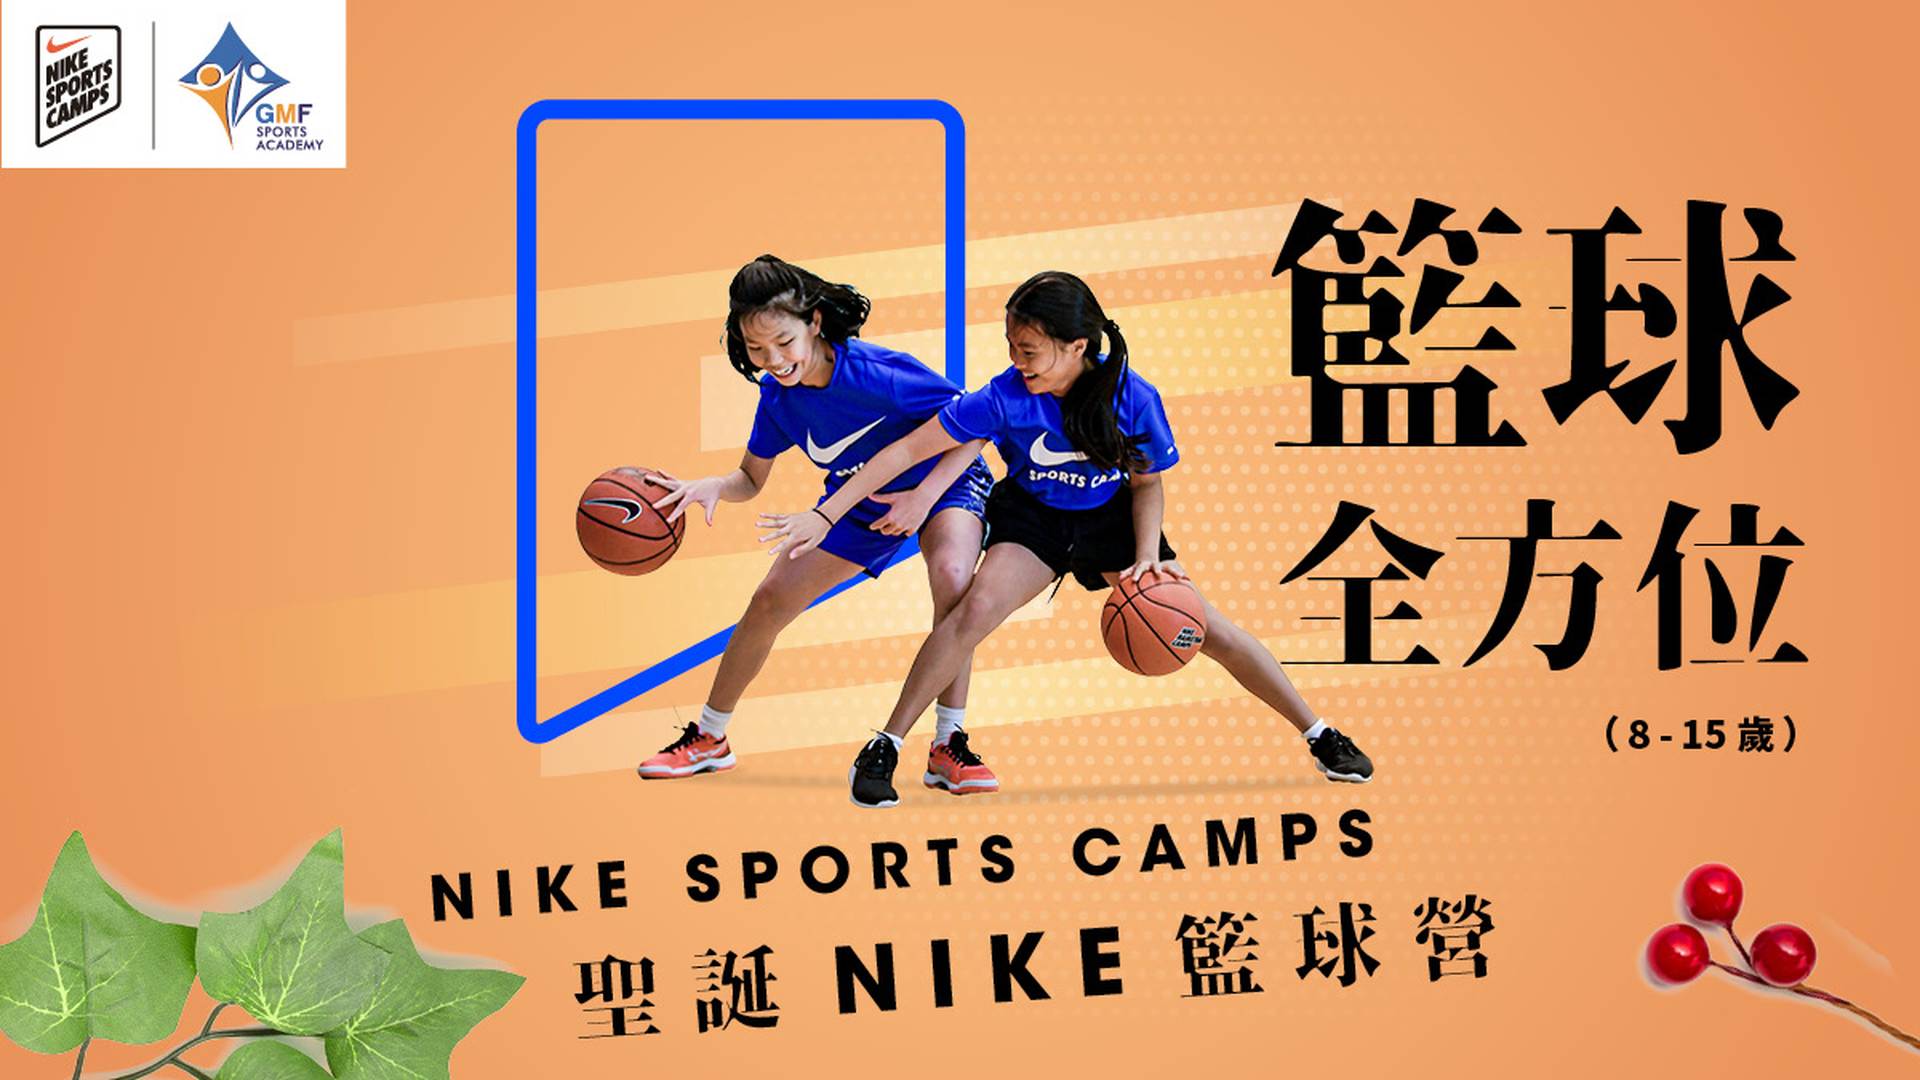 XMAS Nike Basketball Fun Camp 聖誕NIKE籃球全方位營 (8-15歲)